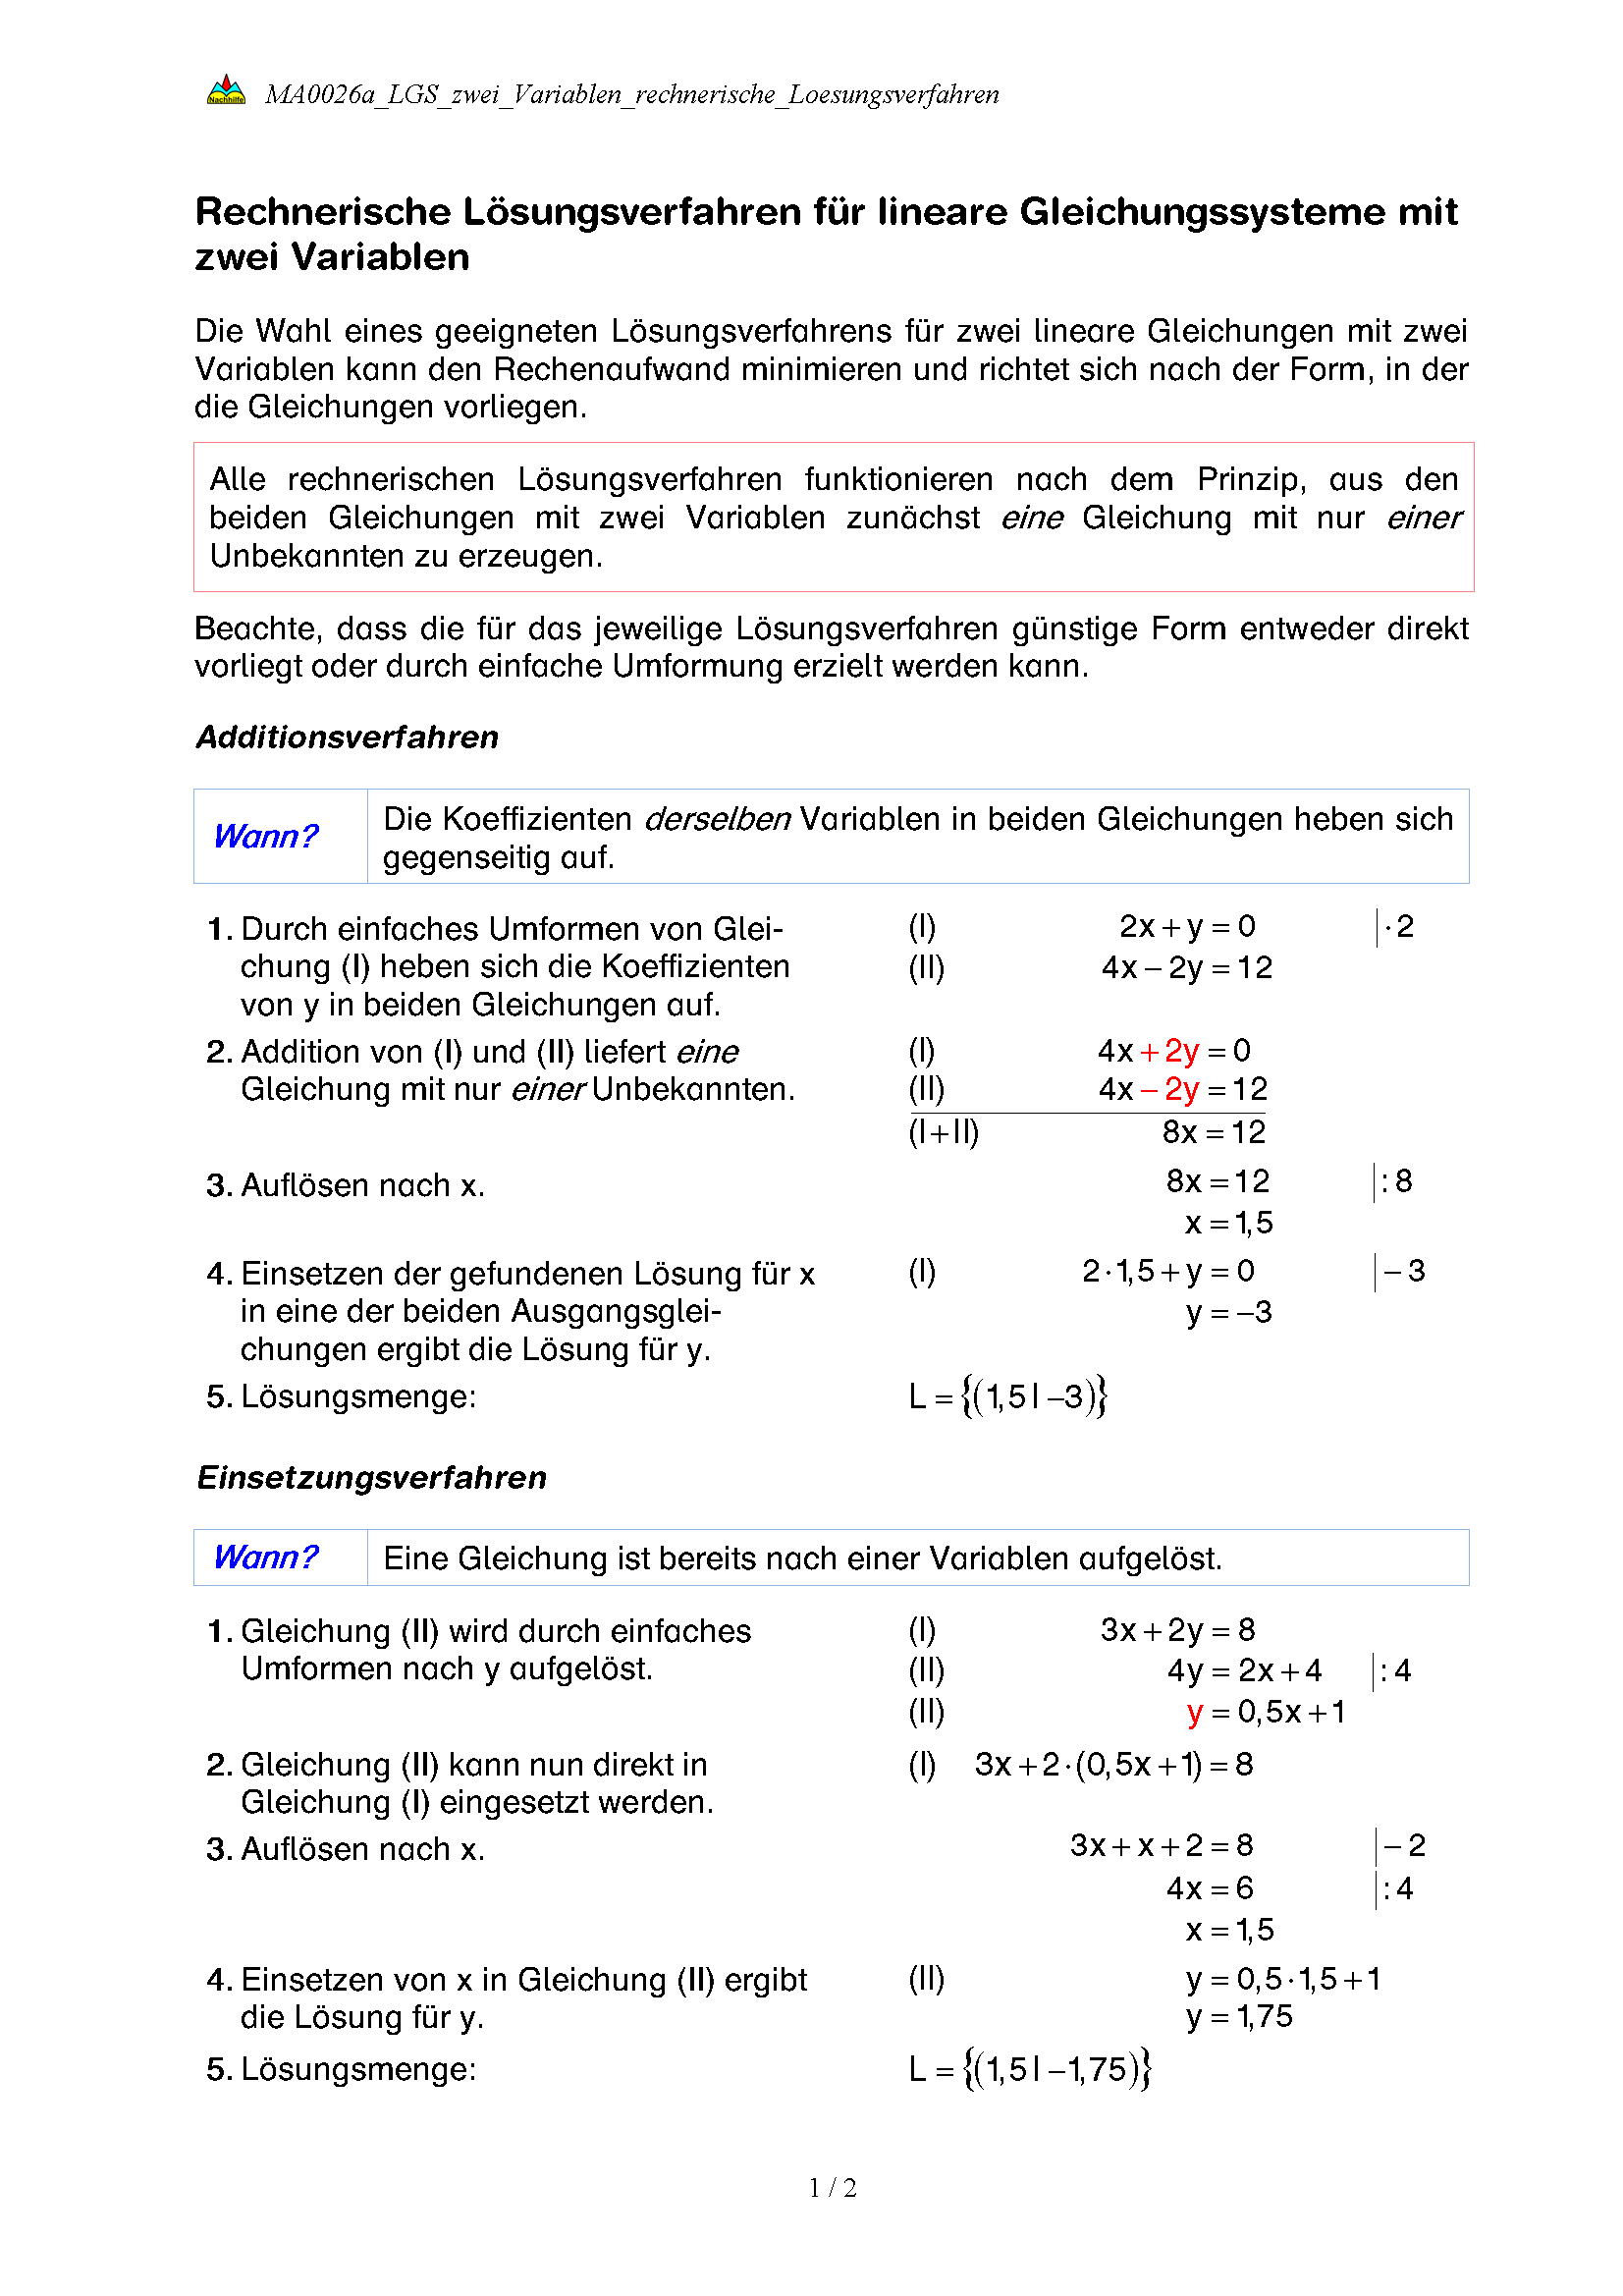 Rechnerische Lsungsverfahren fr lineare Gleichungssysteme mit zwei Variablen